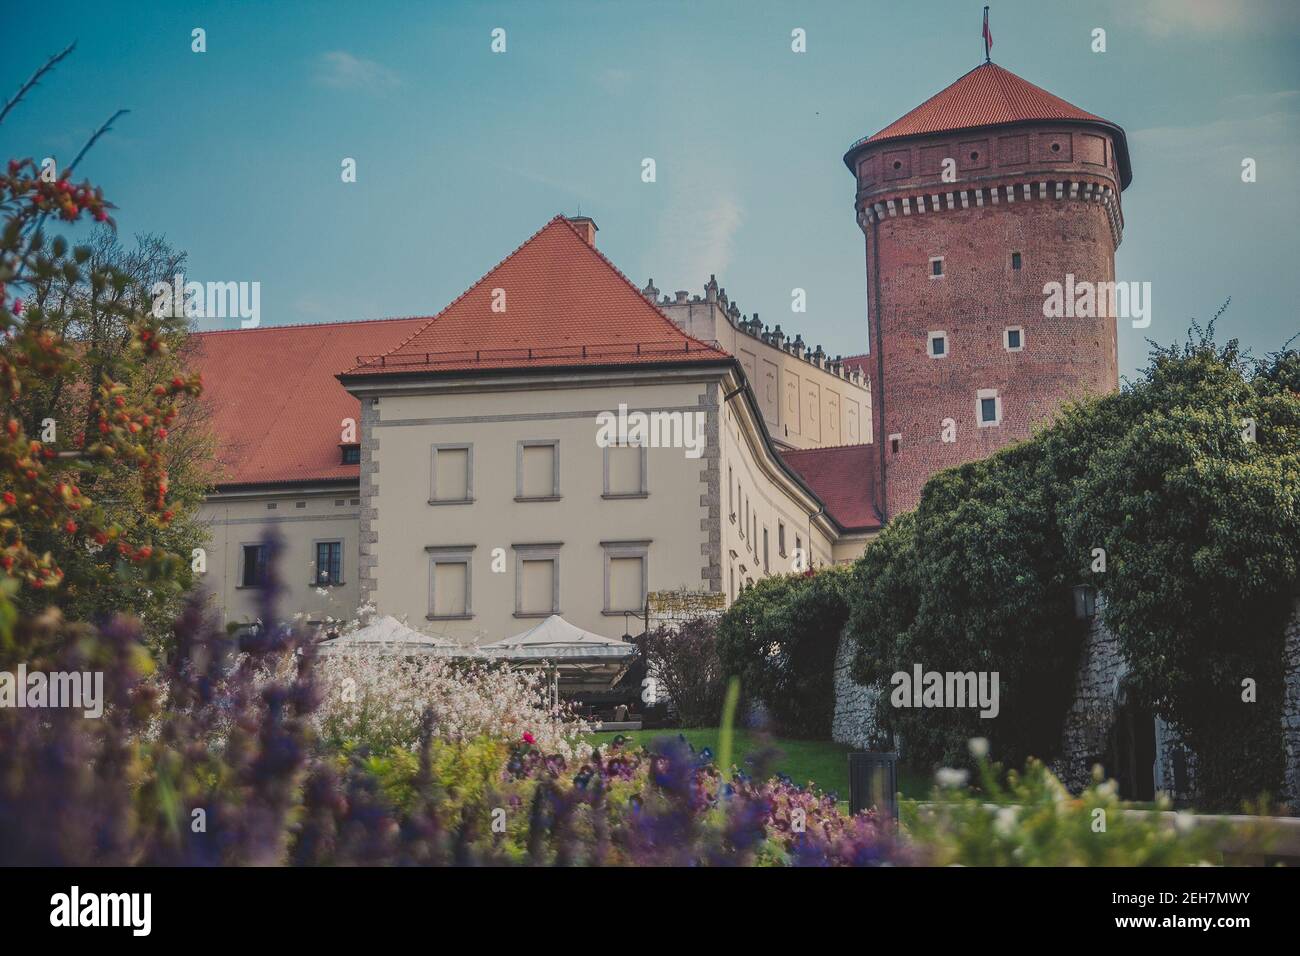 Wawel Senator Turm mit Schloss, Rasen, Efeu, Regenschirme, Blumen und Sträucher Stockfoto